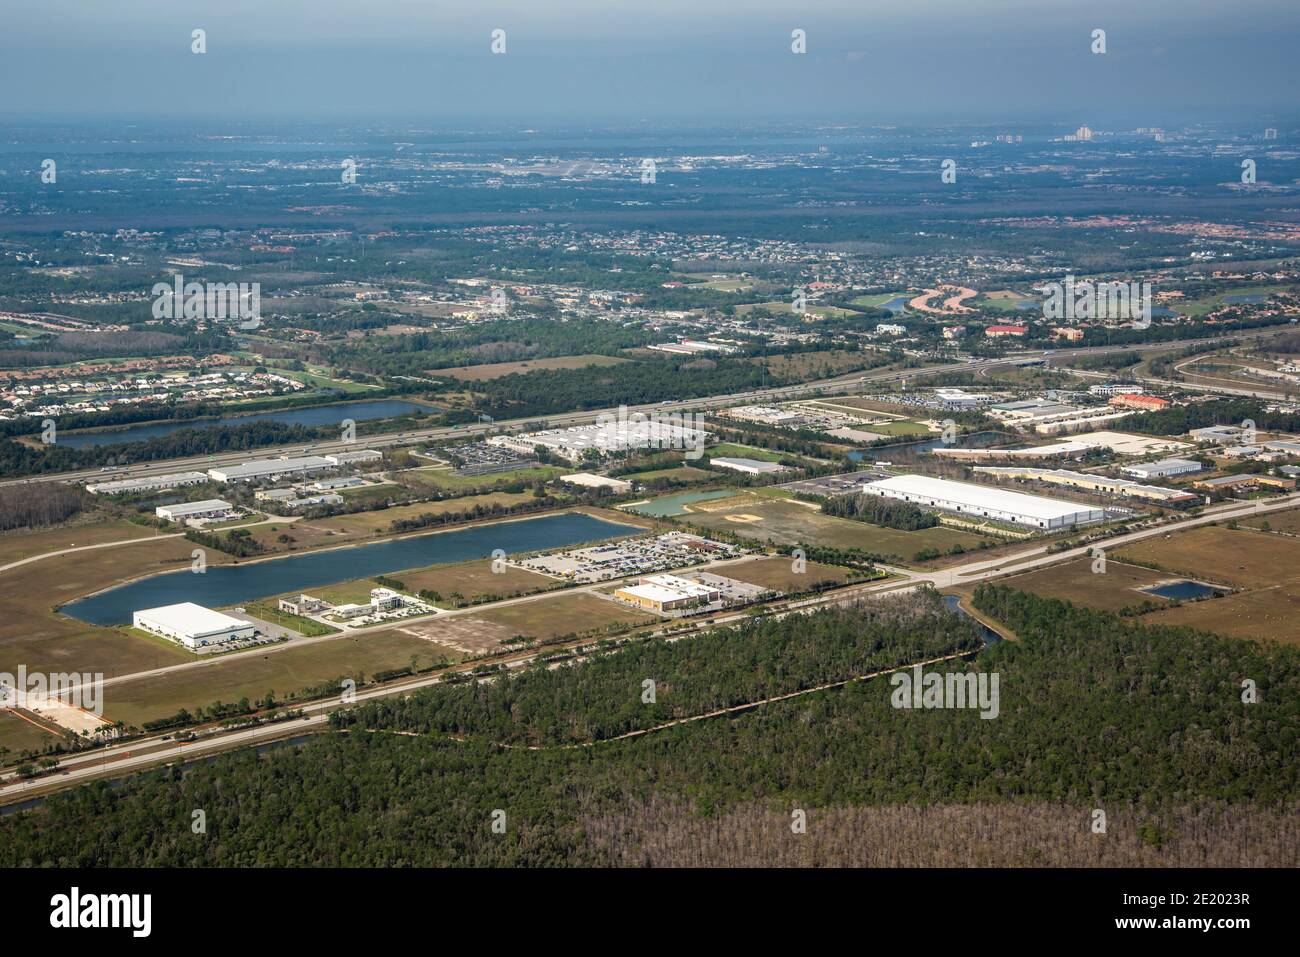 Fort Meyers, Florida. Vista aérea del paisaje industrial y de negocios junto al aeropuerto y vista parcial del campo de golf Olde Hickory Foto de stock